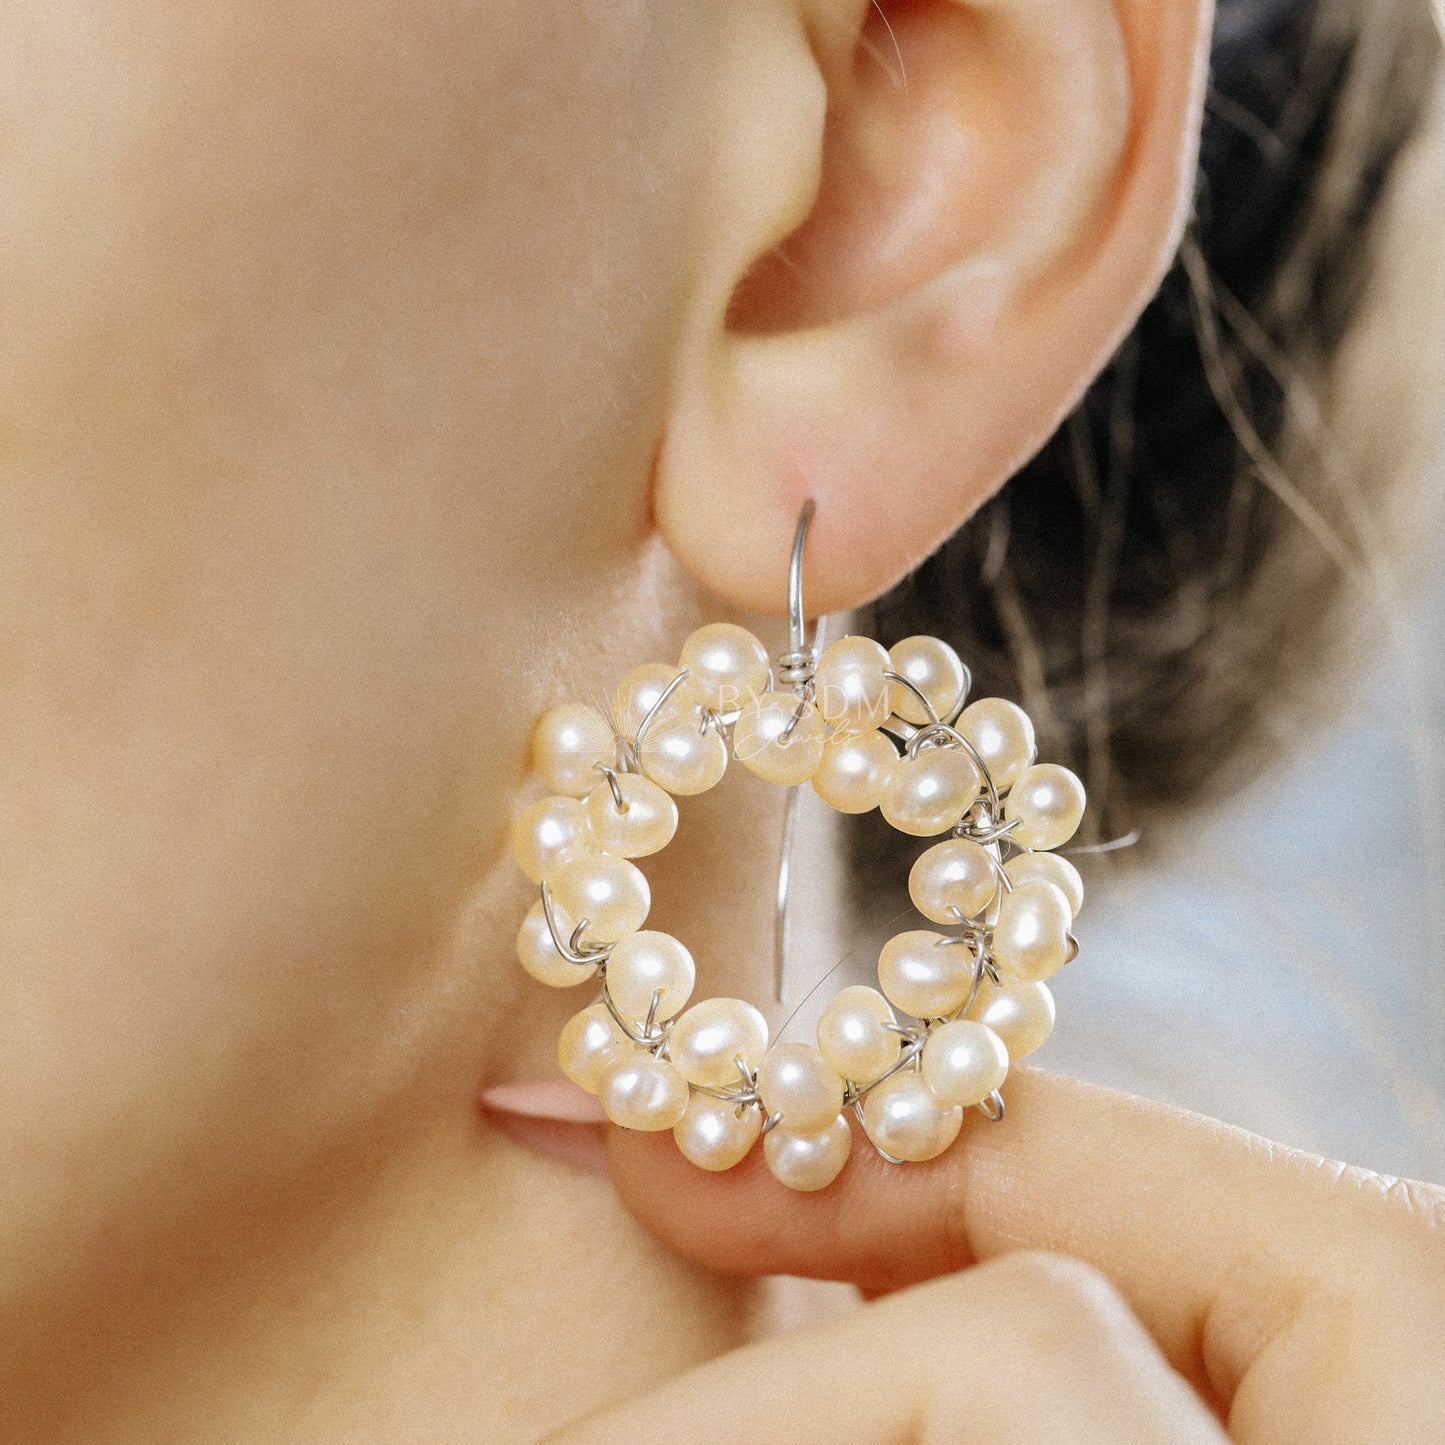 Pearl Earrings • Hoop Earrings • Bridal Freshwater Pearls Earrings • BYSDMJEWELS